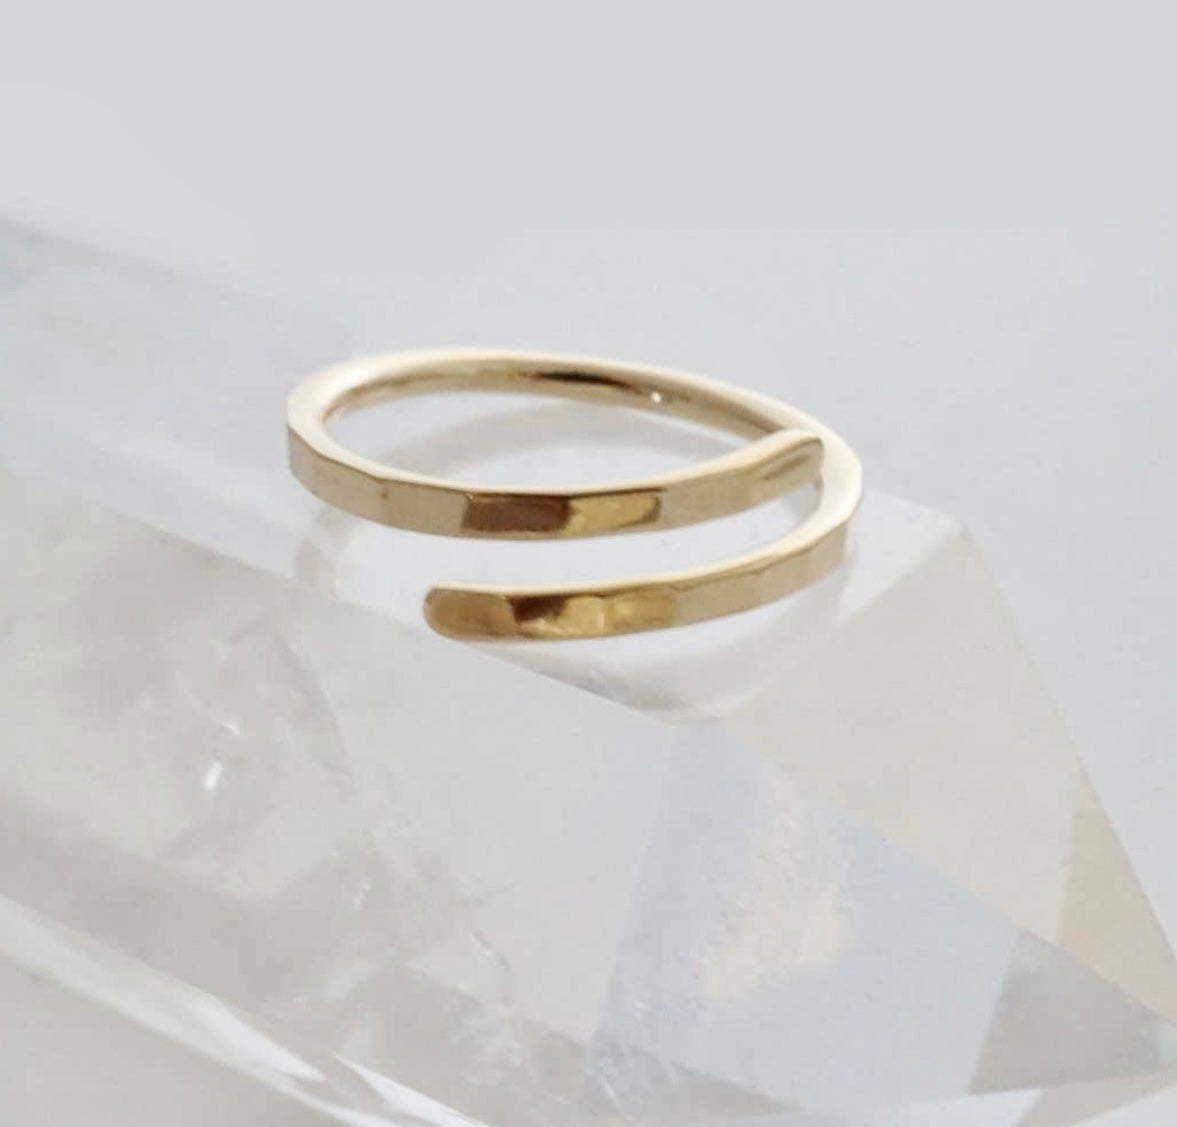 Honeycat Jewelry Hammered Marigold Wrap Around Ring